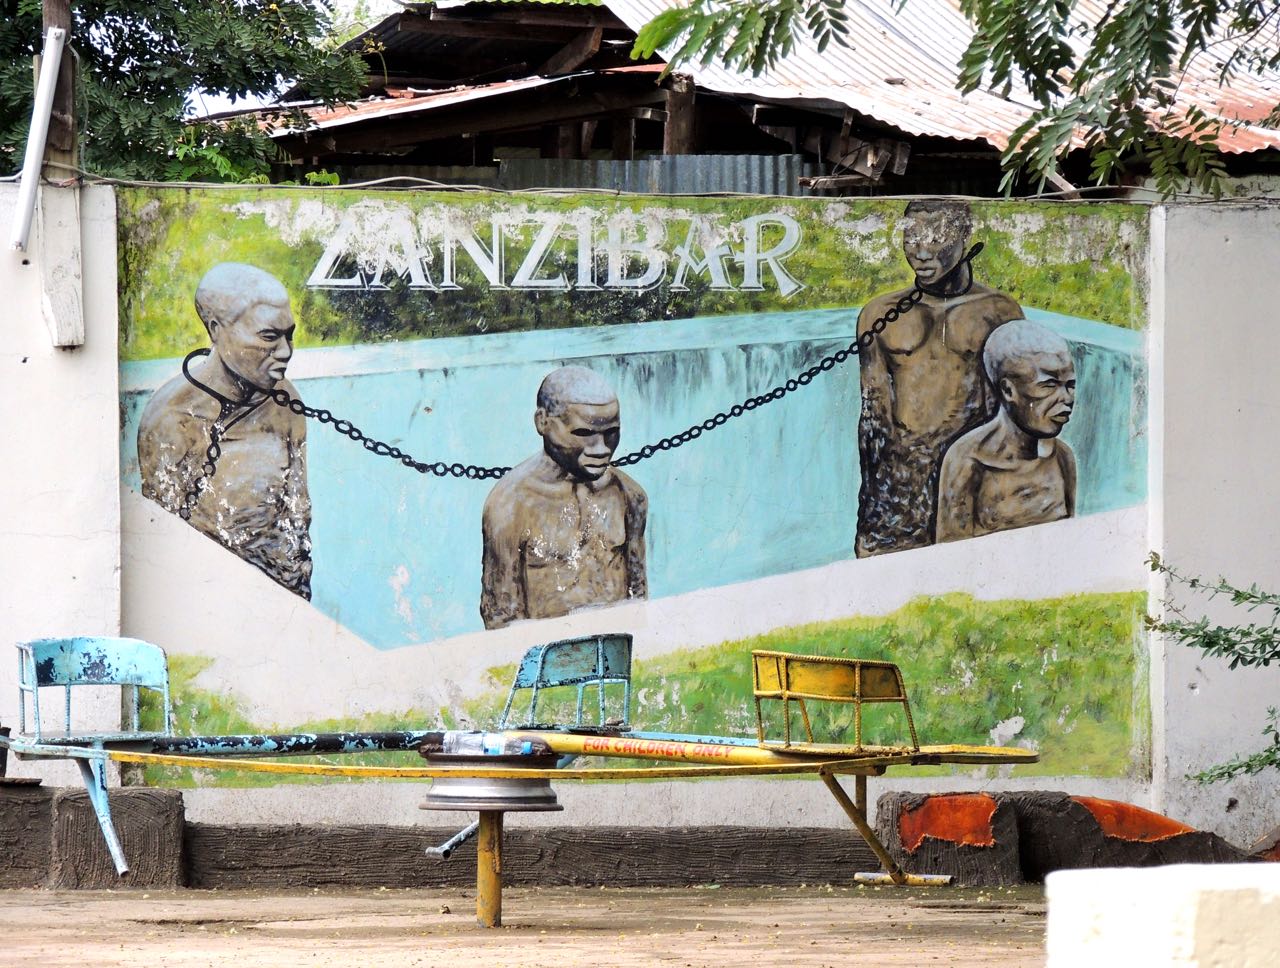 Zanzibar Sign